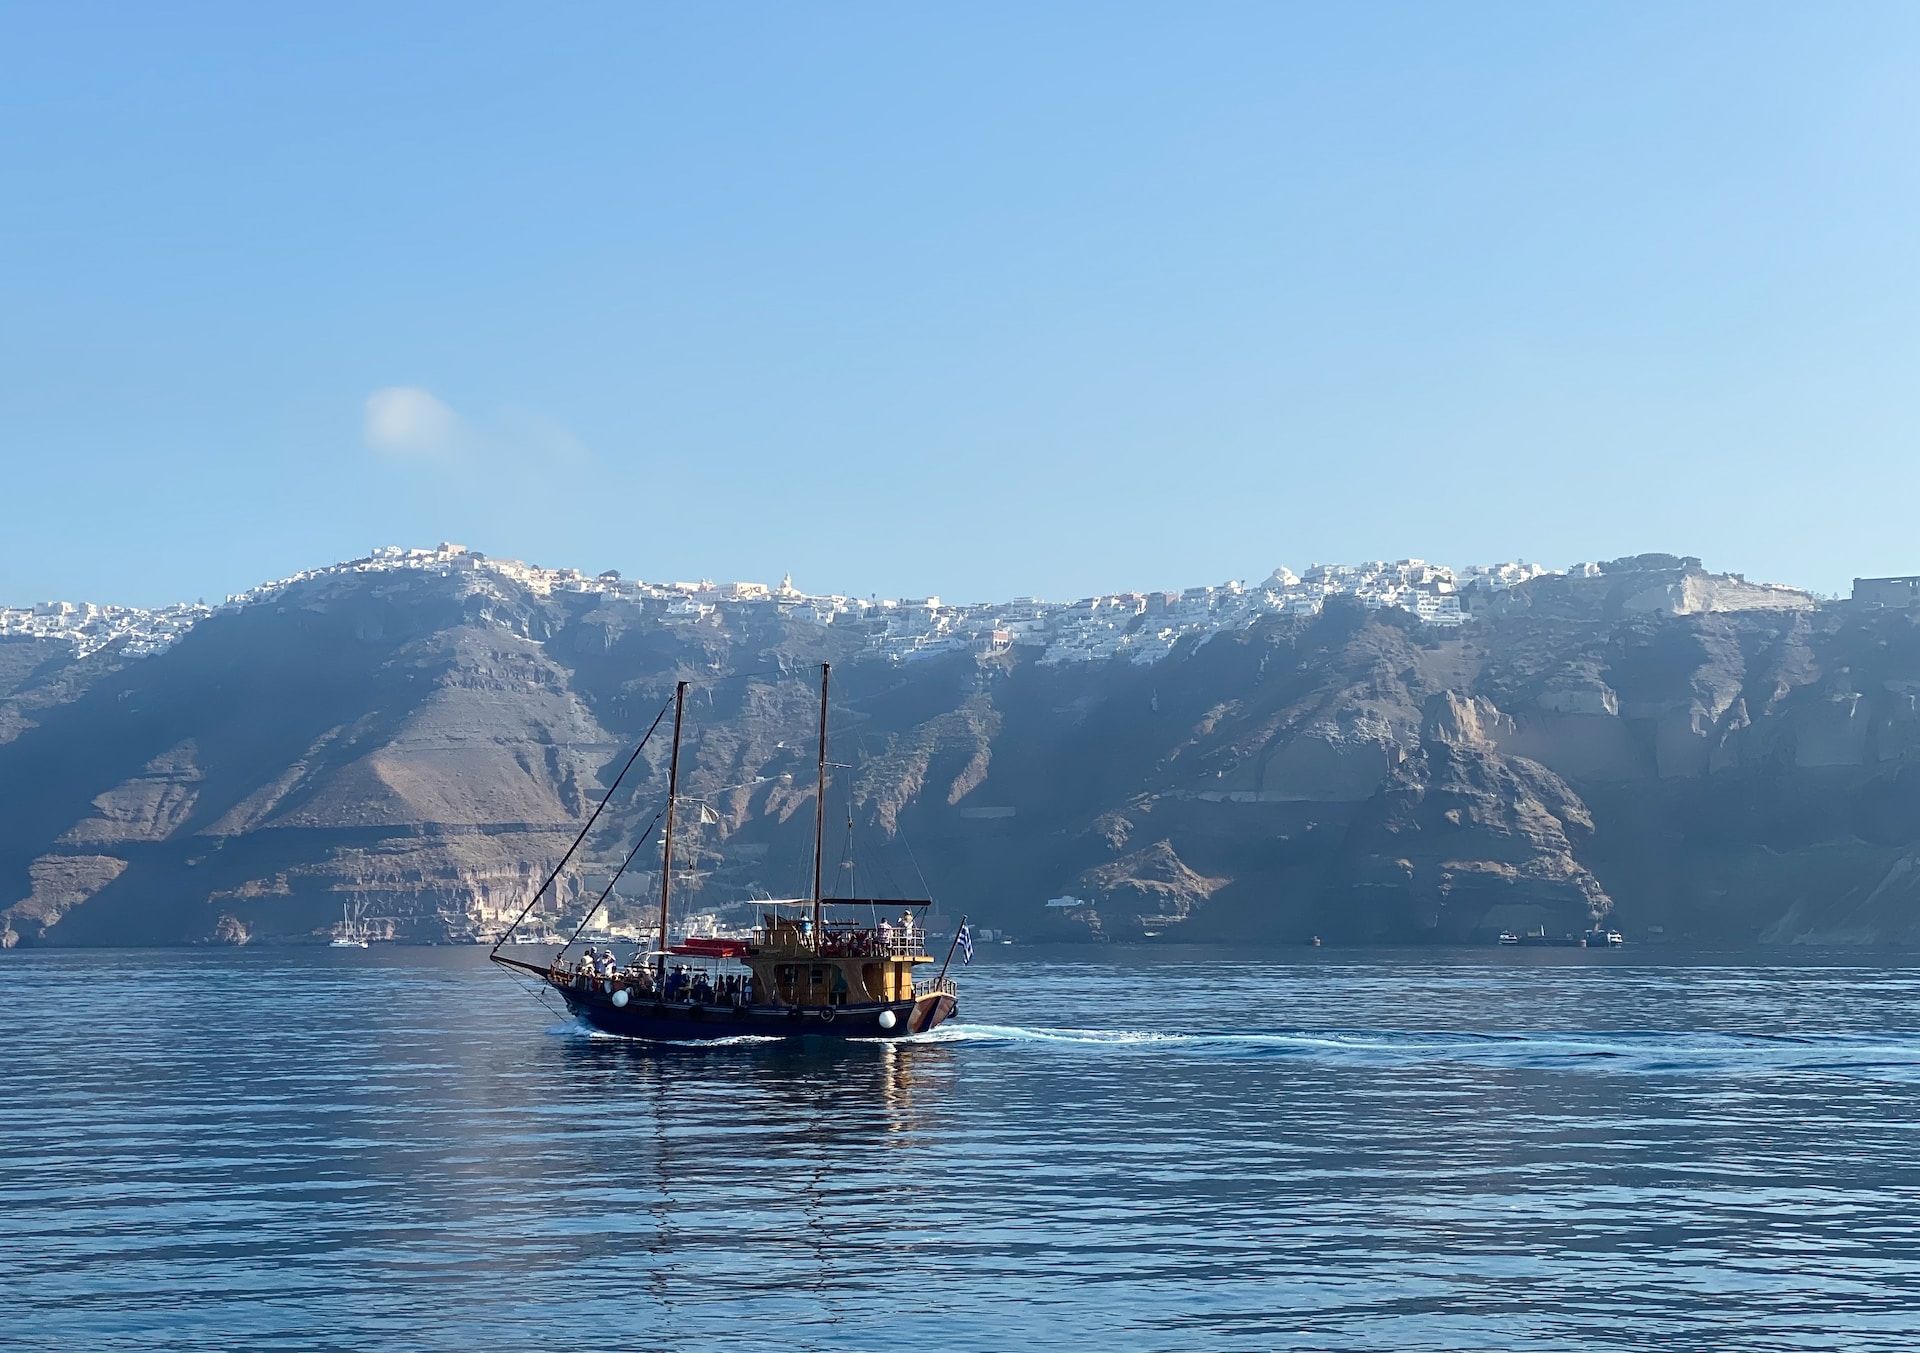 Εκδρομή με σκάφος με ιστιοπλοΐα στις ακτές της Σαντορίνης, Ελλάδα